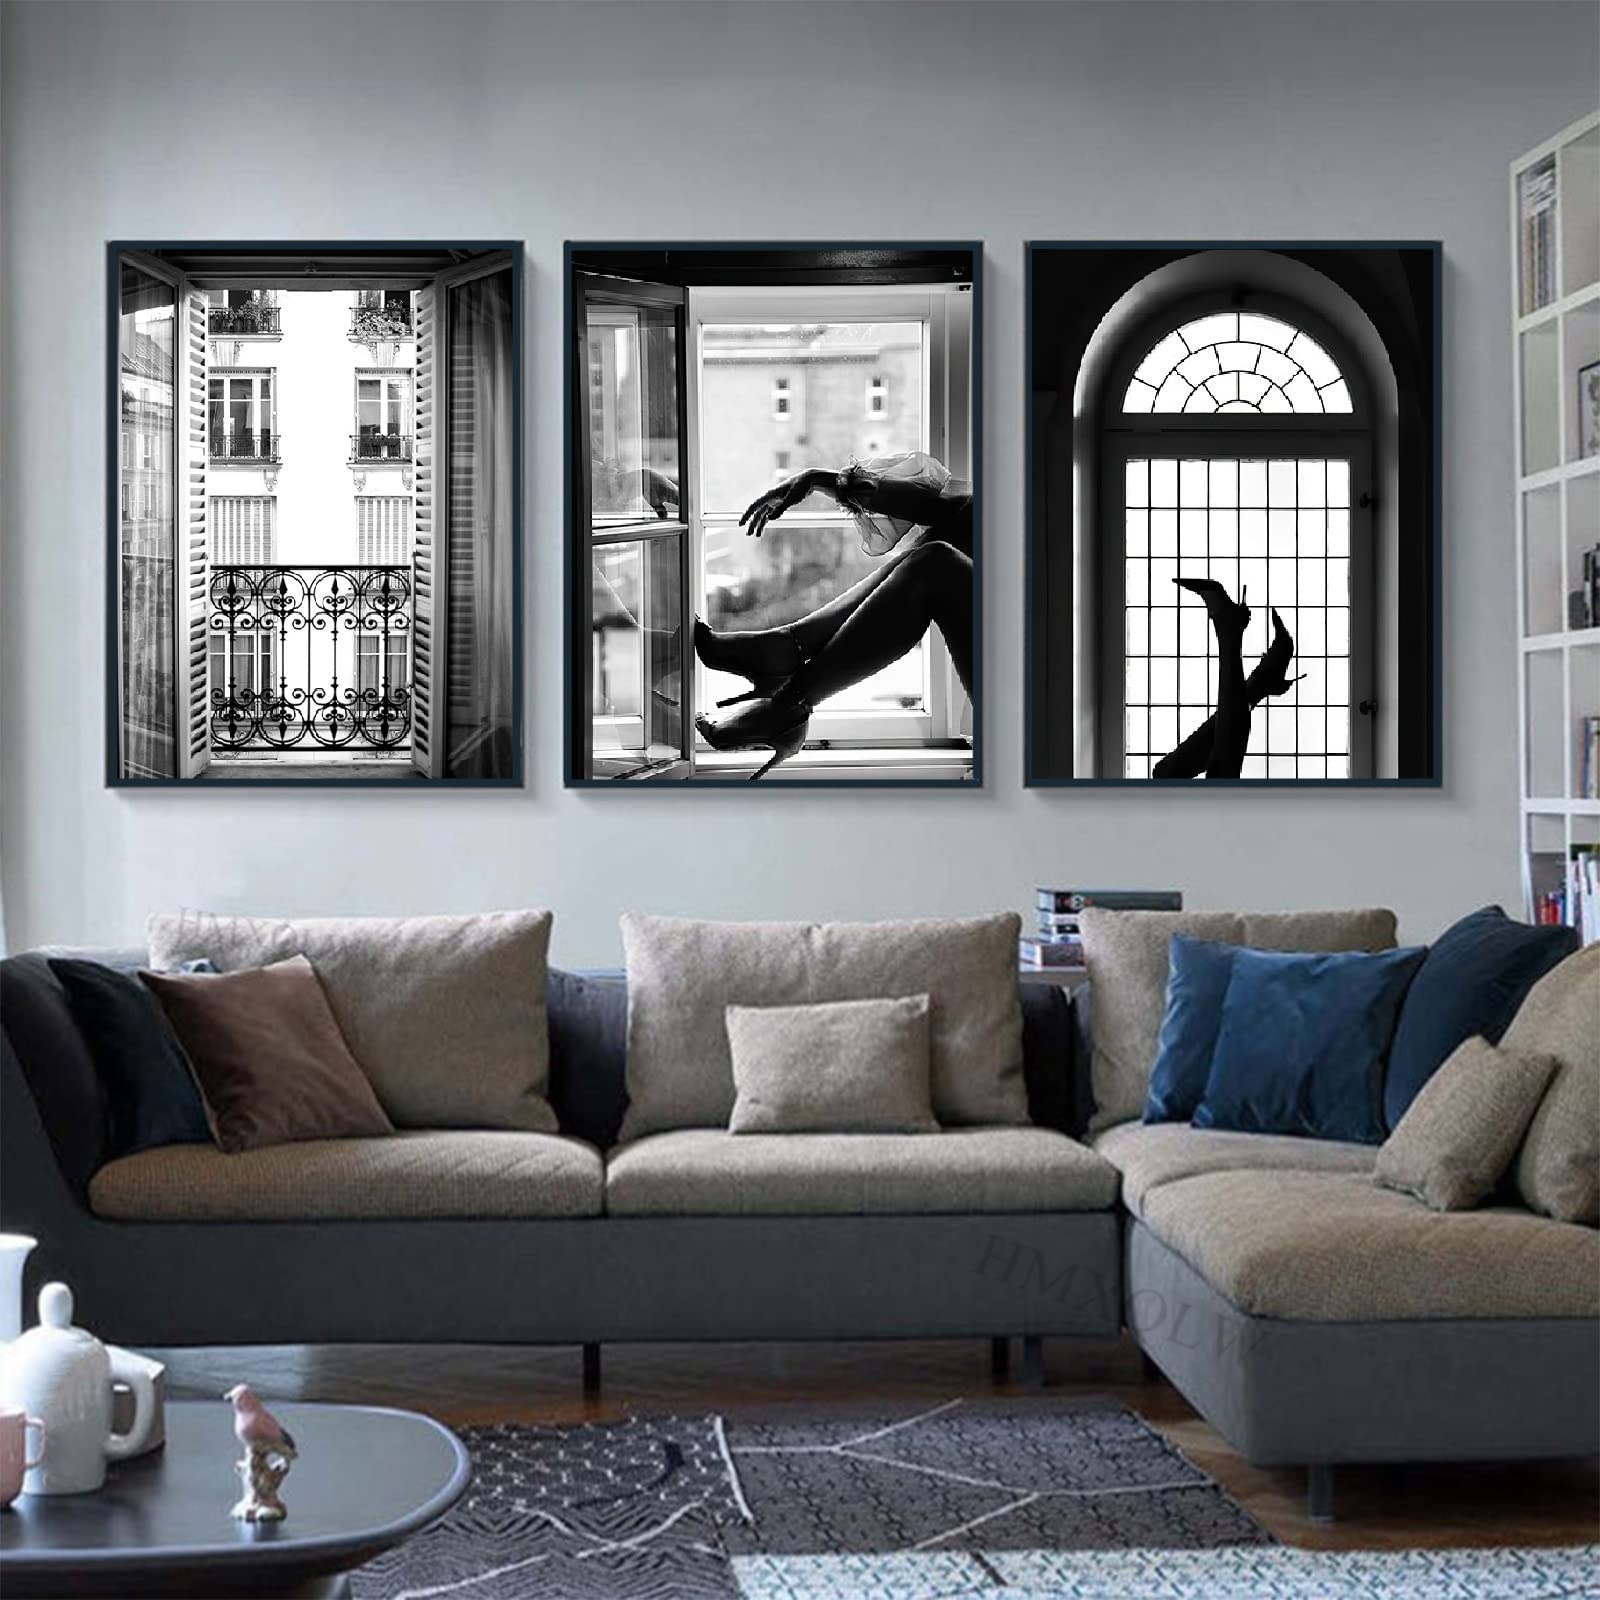 HMXQLW Schwarz Weiß Bilder 3er Set Leinwandbilder Modern Poster für Wohnzimmer Schlafzimmer Deko Kunst Malerei Kein Rahmen (High Heels,30X40CM)